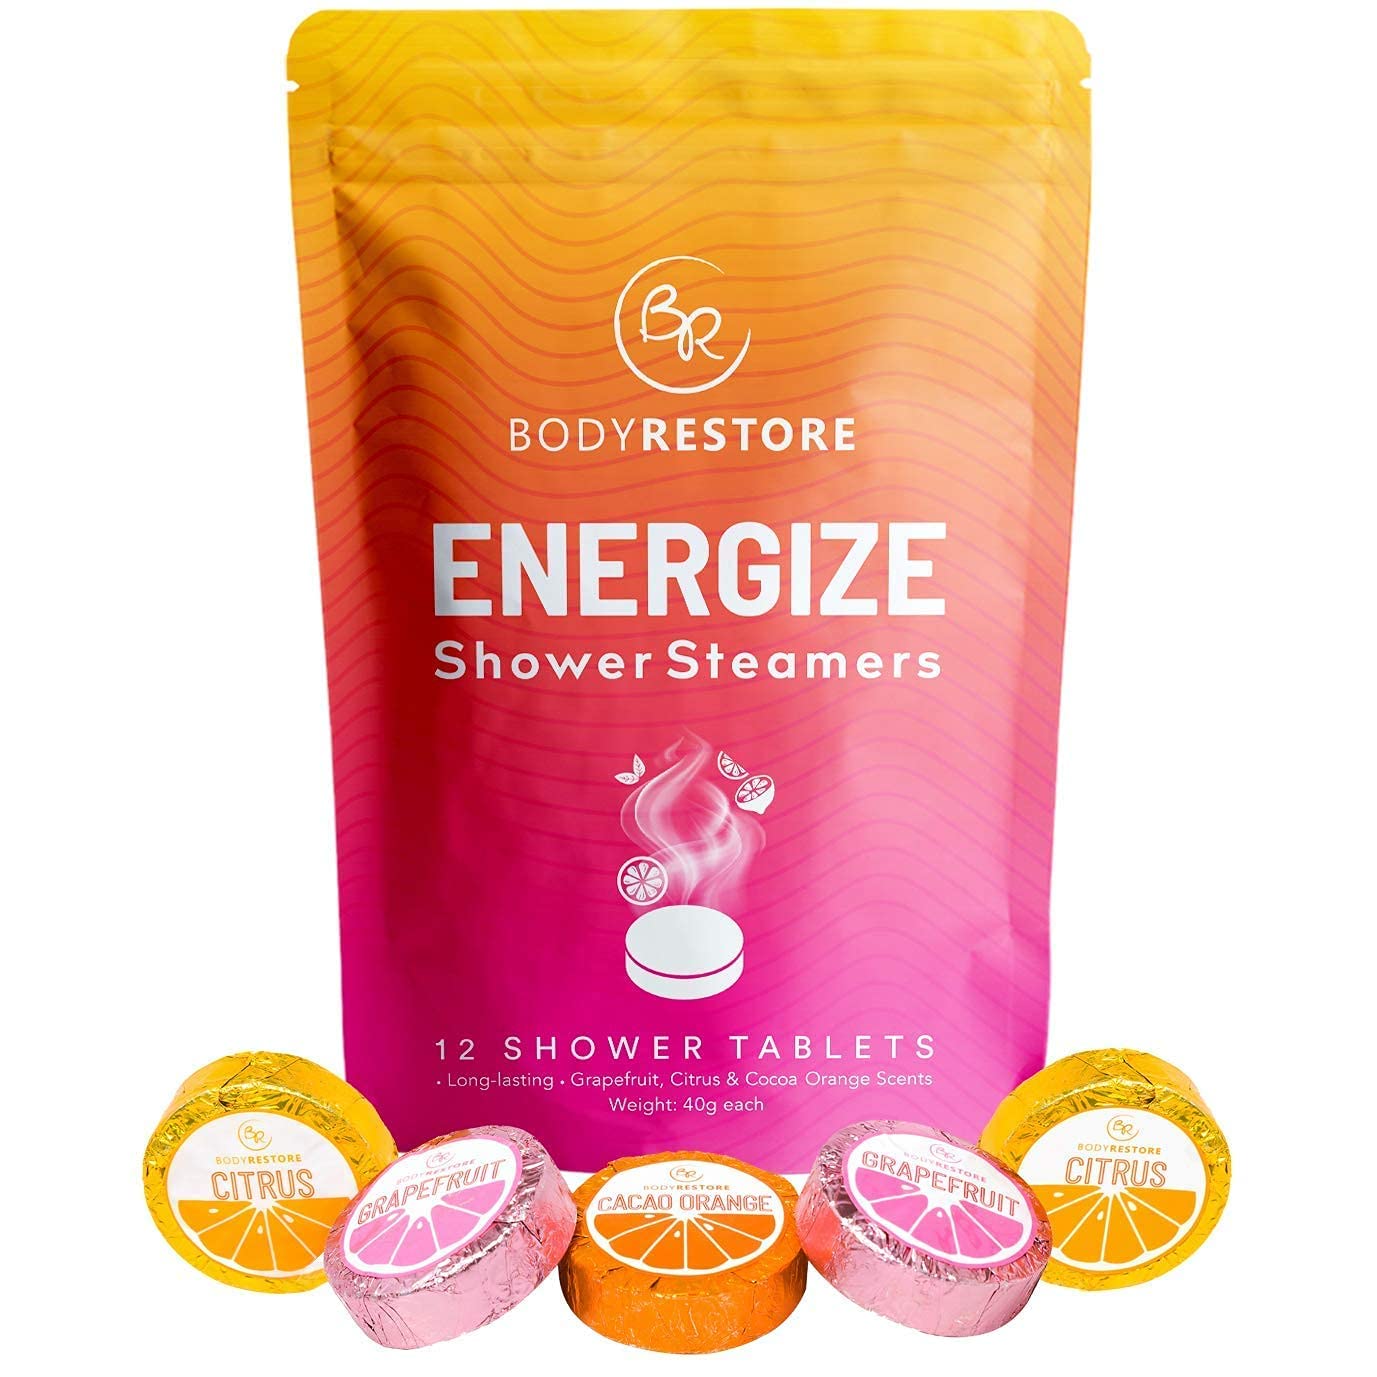 Citrus Shower Steamer